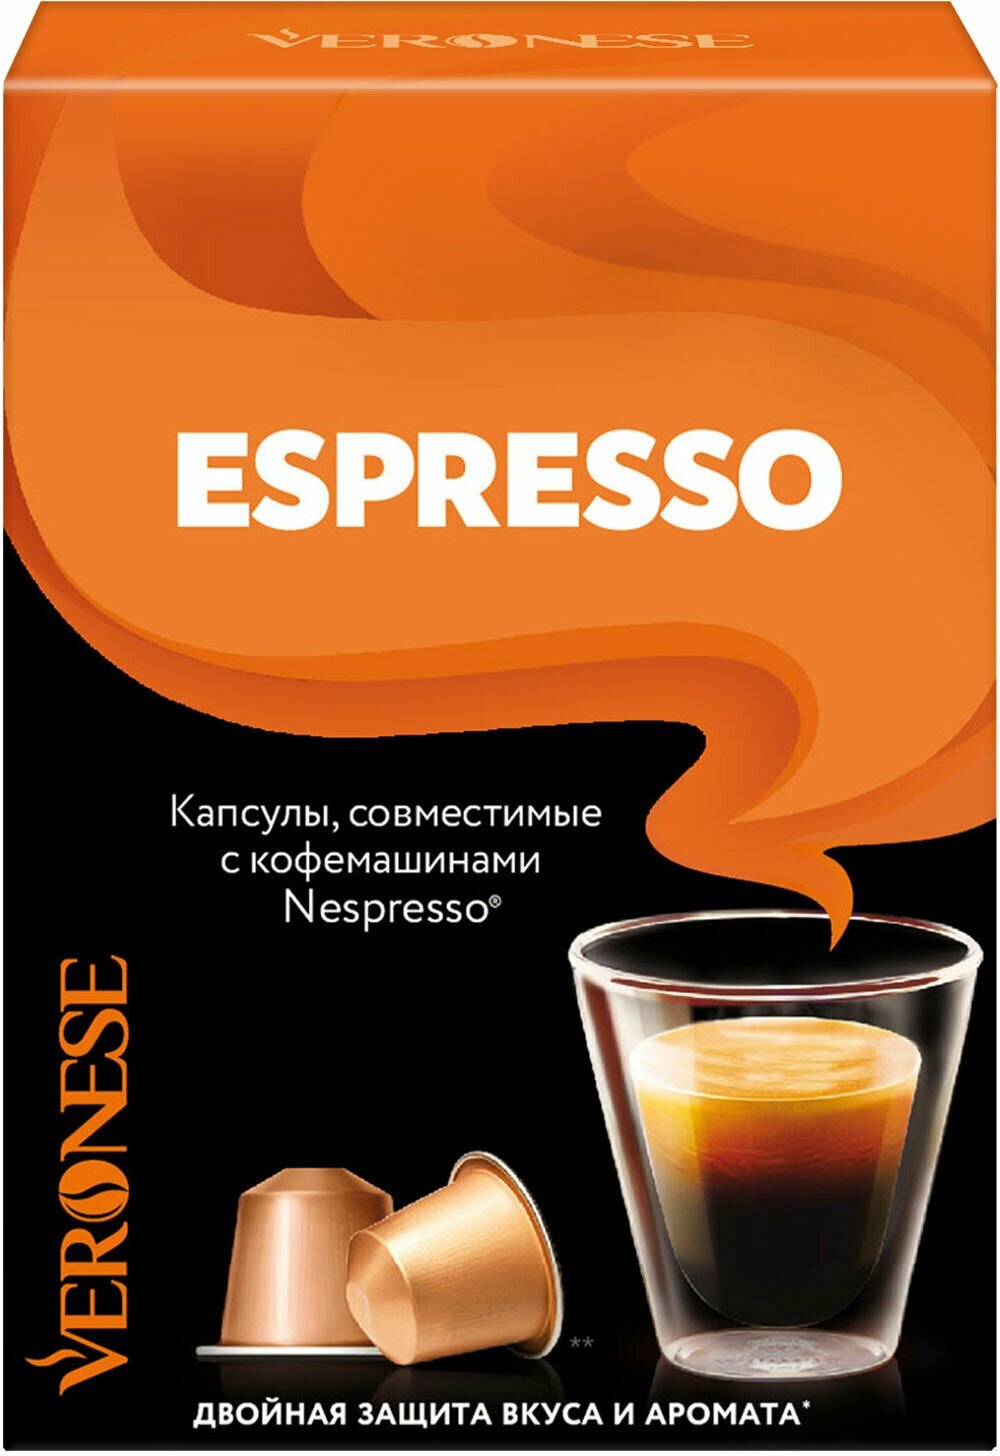 Кофе в капсулах VERONESE "Espresso" для кофемашин Nespresso, 10 порций, 4620017633259 2 шт .